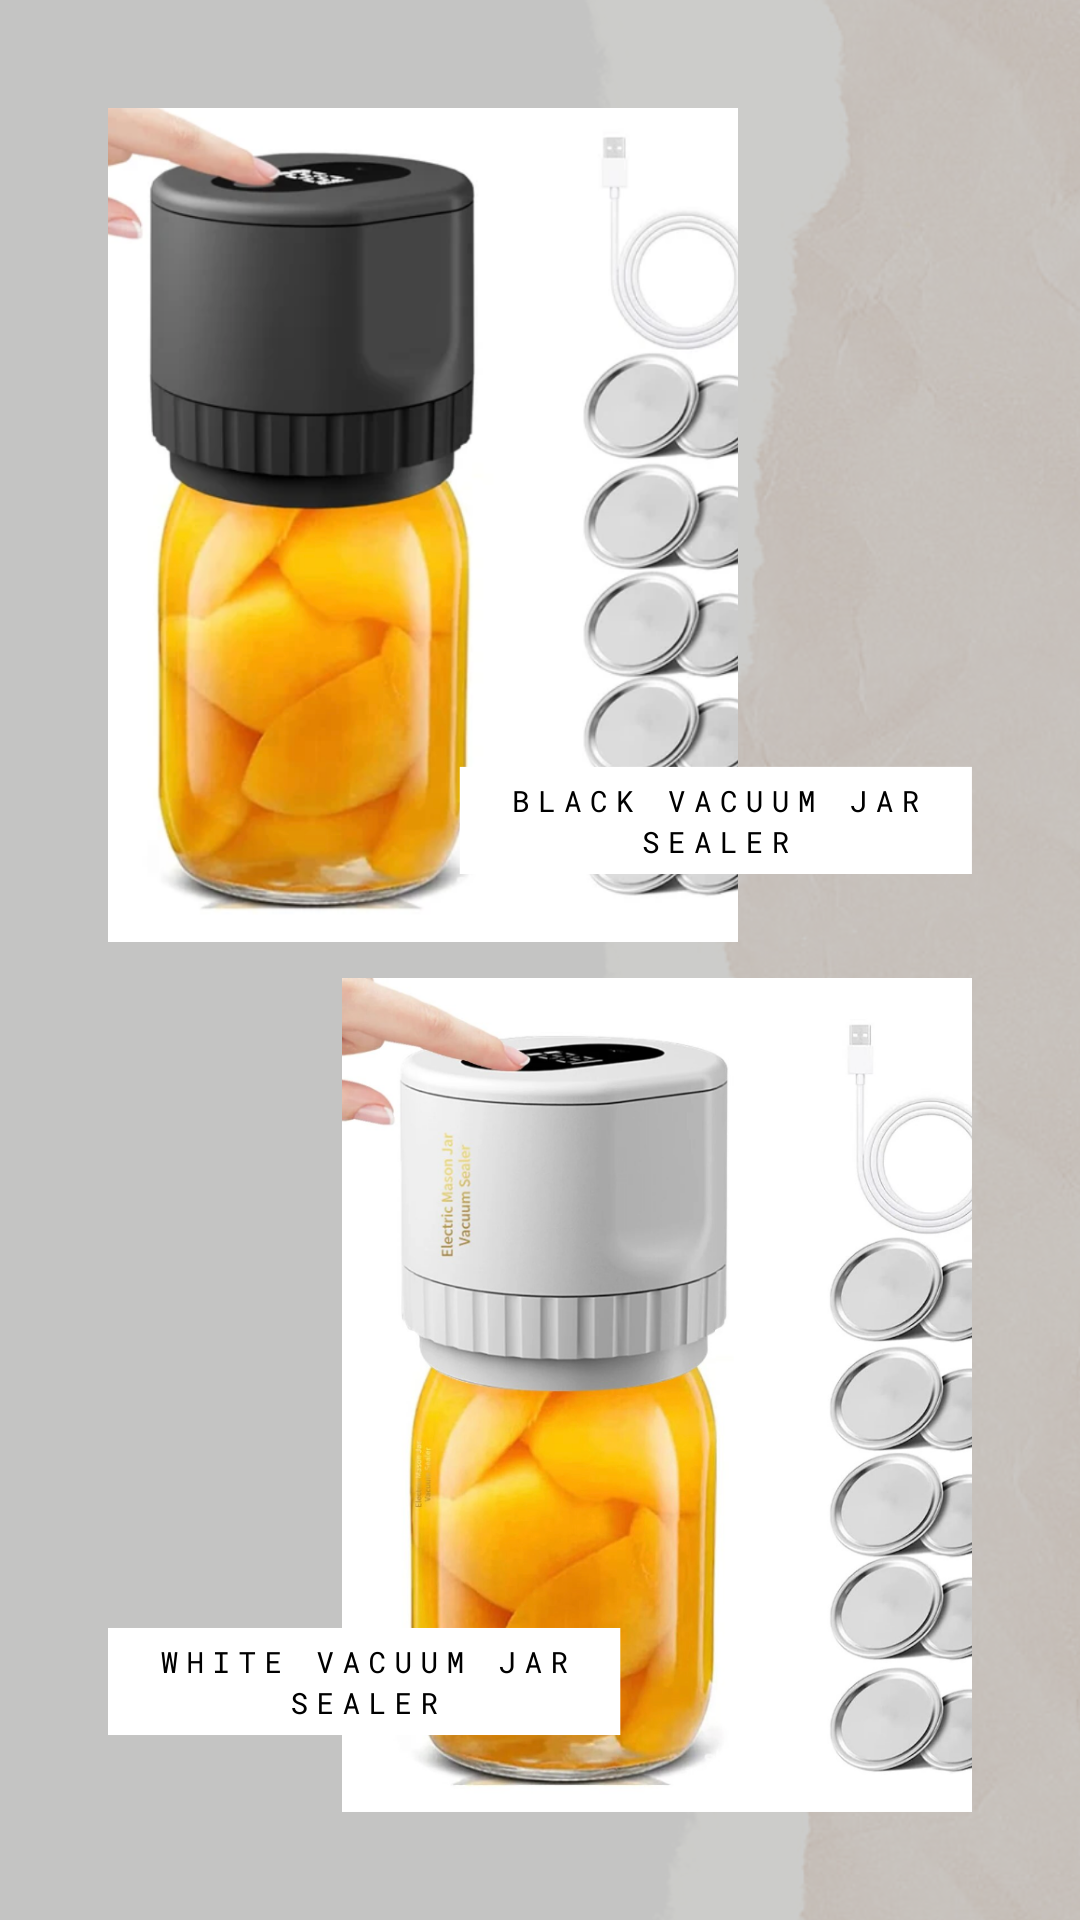 Electric Jar Vacuum Sealer Kit